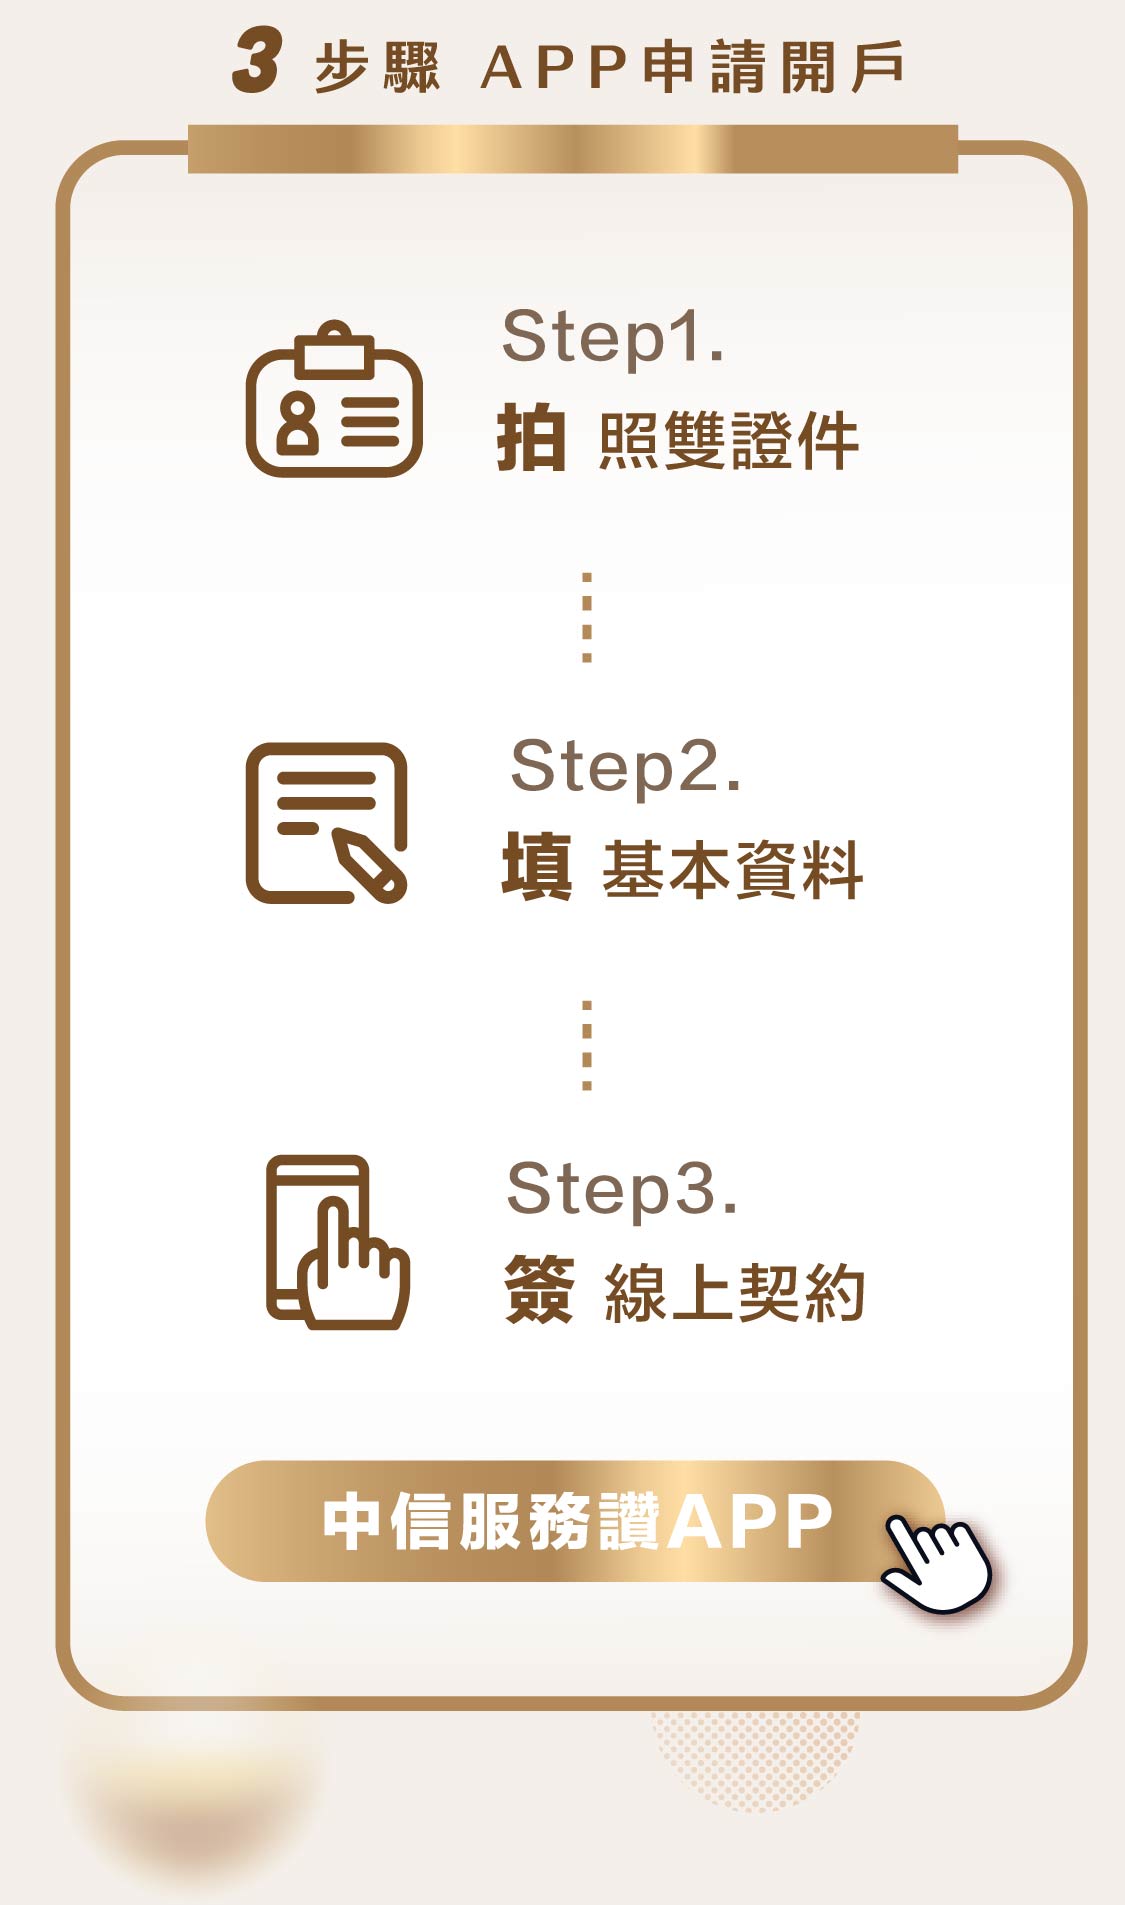 手機版-3步驟APP申請開戶:3步驟APP申請開戶-1.拍照雙證件2.填基本資料3.簽線上契約